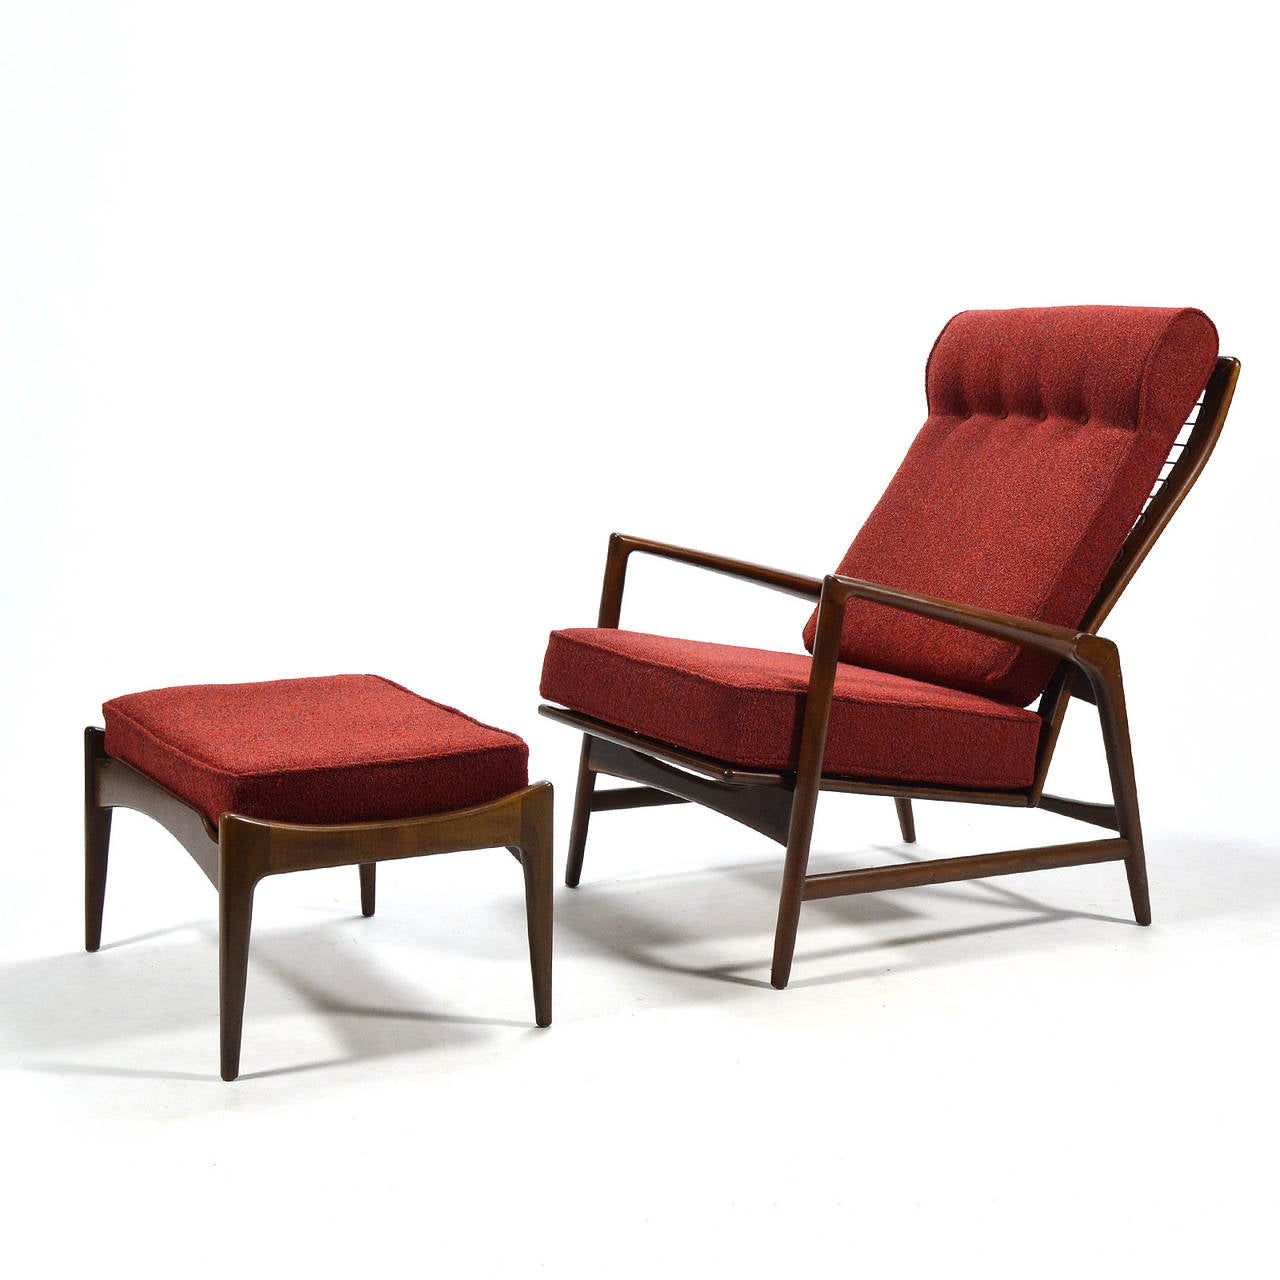 Dieser Liegesessel mit Ottomane von Ib Kofod-Larsen vereint sexy Linien, unglaublichen Komfort und großartige Funktion. Der Sessel verfügt über fünf Neigungspositionen, die von Gesprächen über das Lesen bis hin zu einer tiefen Entspannung reichen.